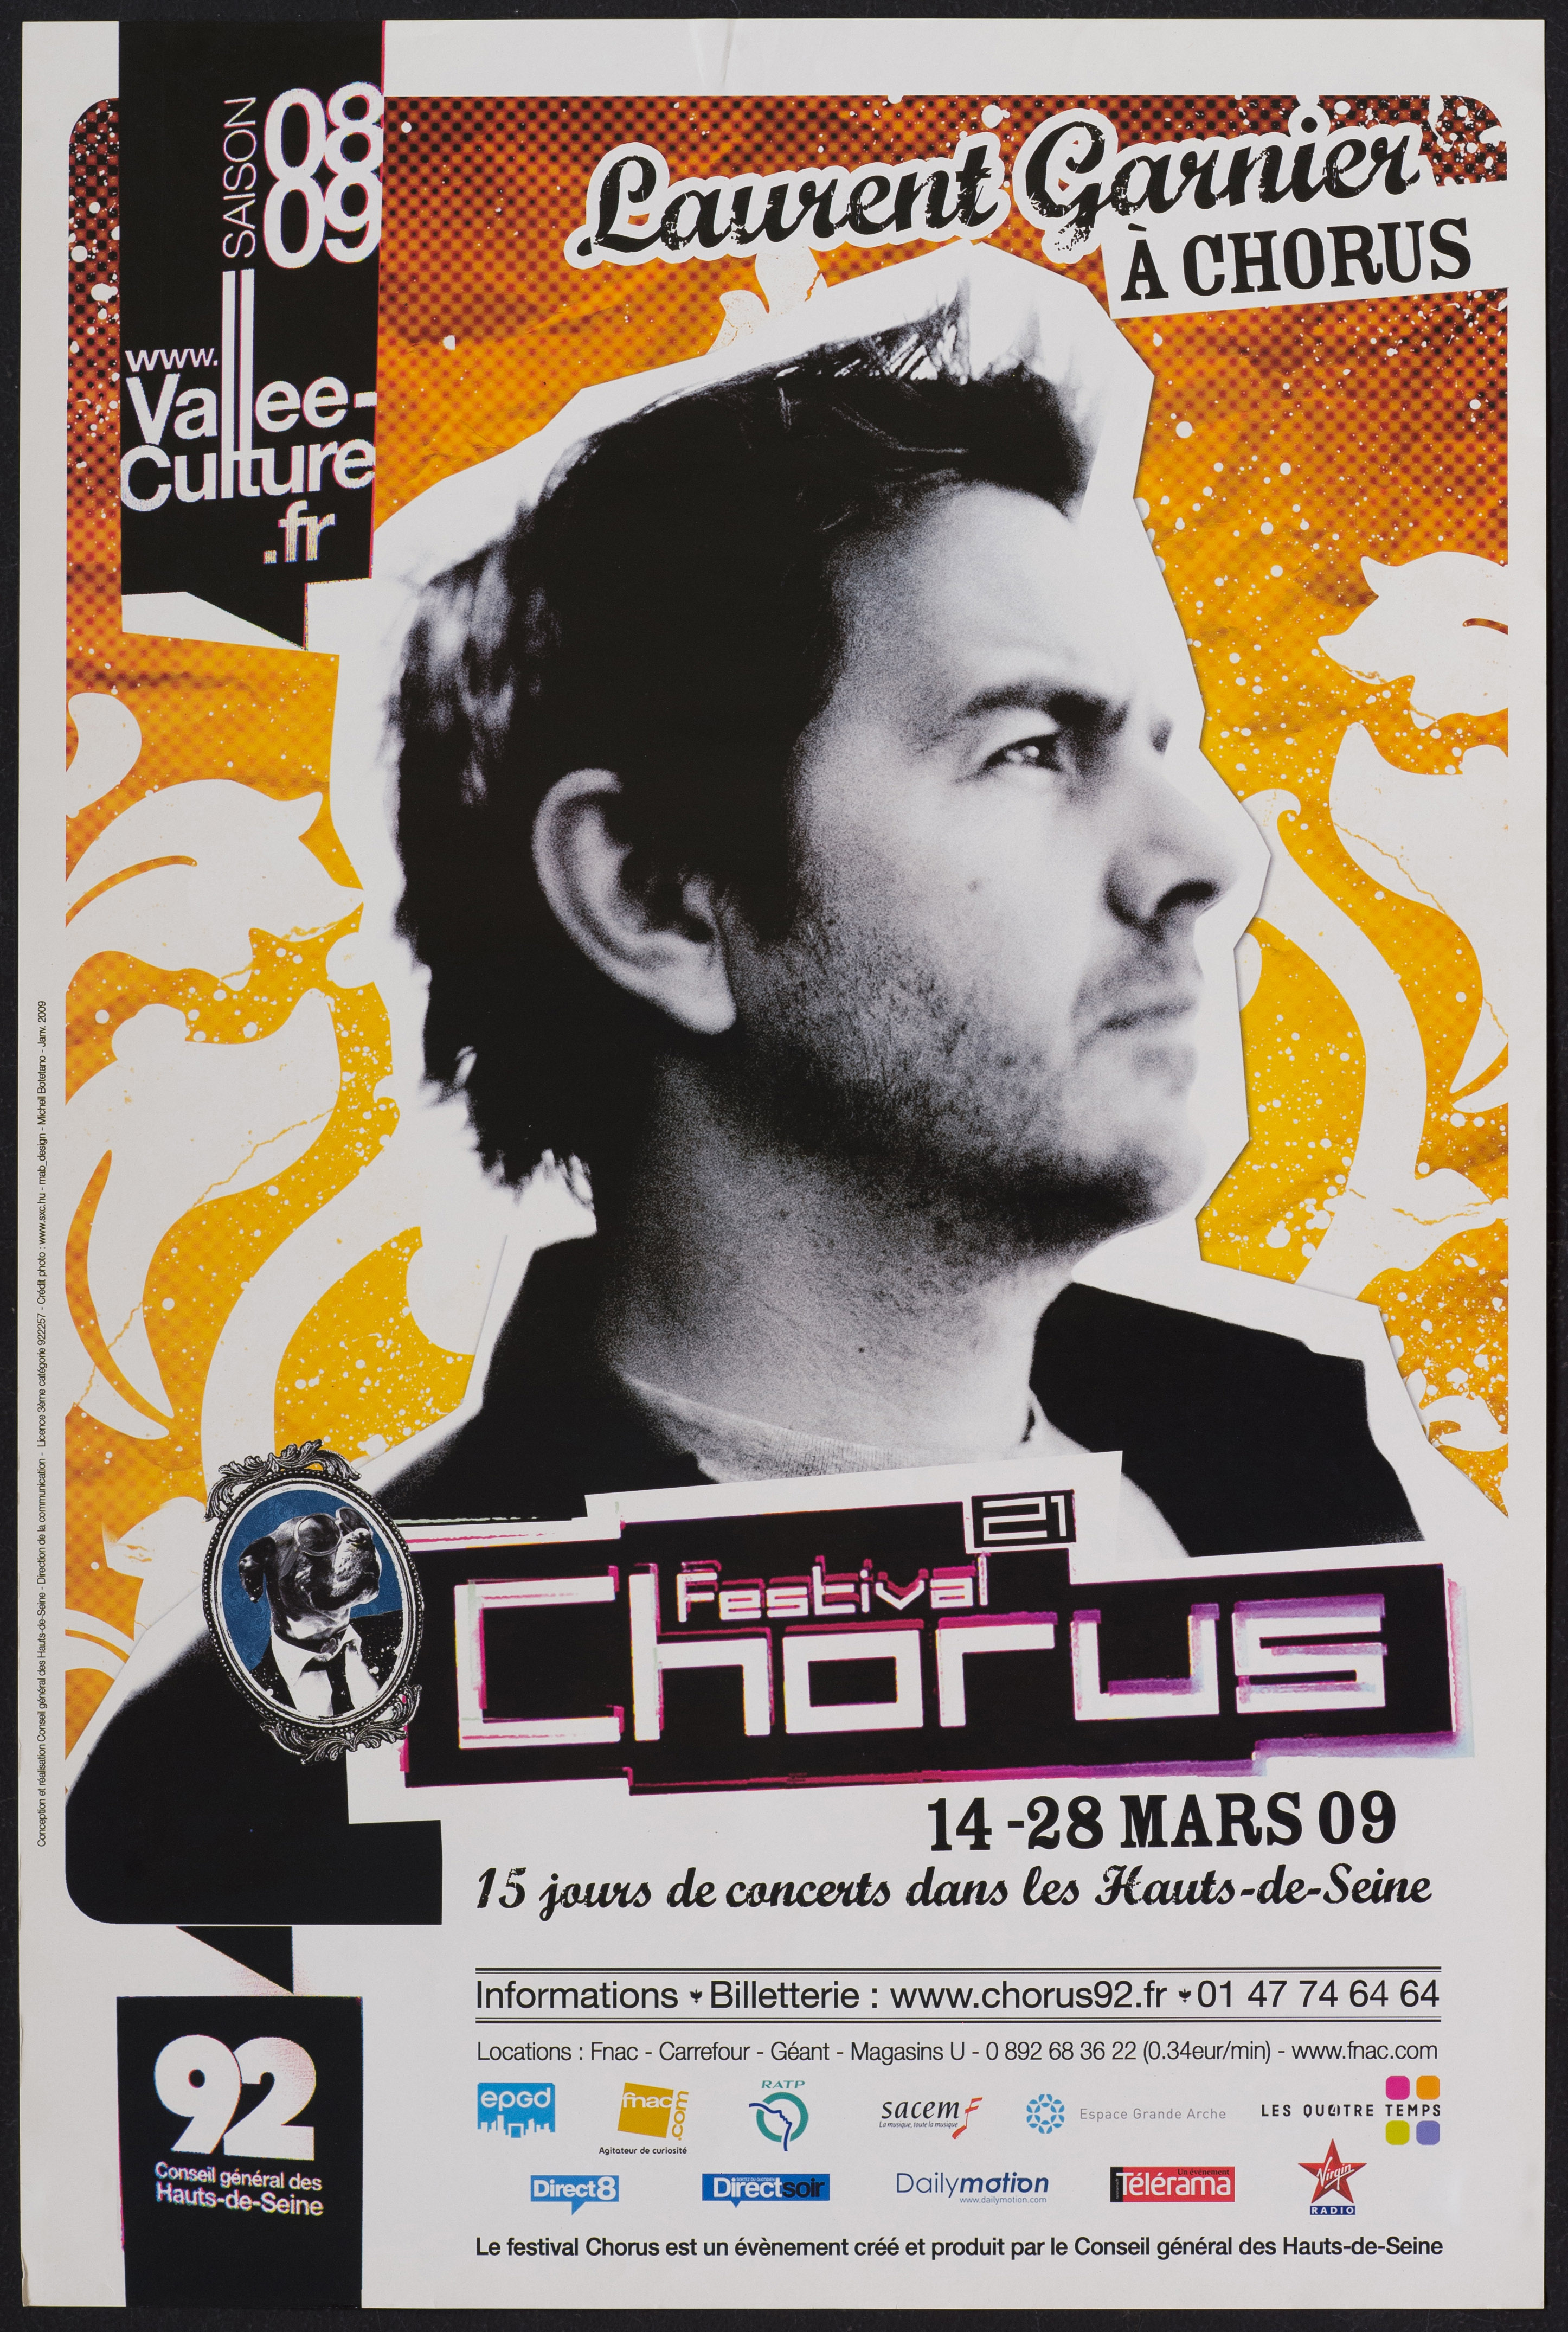 Vallée de la Culture. Saison 08-09. Laurent Garnier à Chorus. Festival de chorus 21ème édition 14-28 mars 2009 […]. - CG 92, 2009. - 1 affiche ill. coul., 60 x 40 cm.